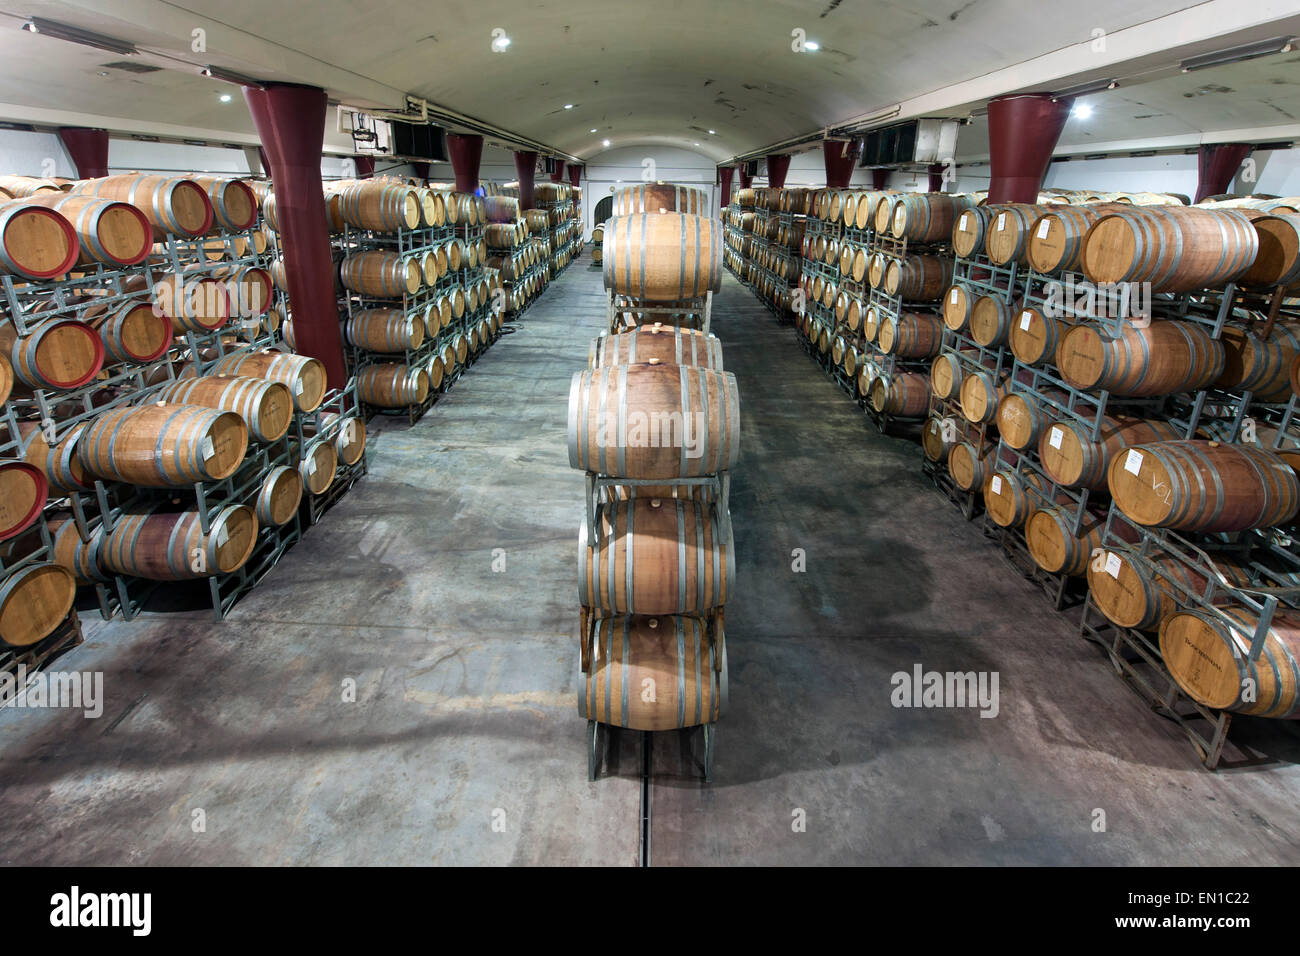 Des tonneaux de vin du vignoble Boschendal à Stellenbosch, Afrique du Sud. Banque D'Images